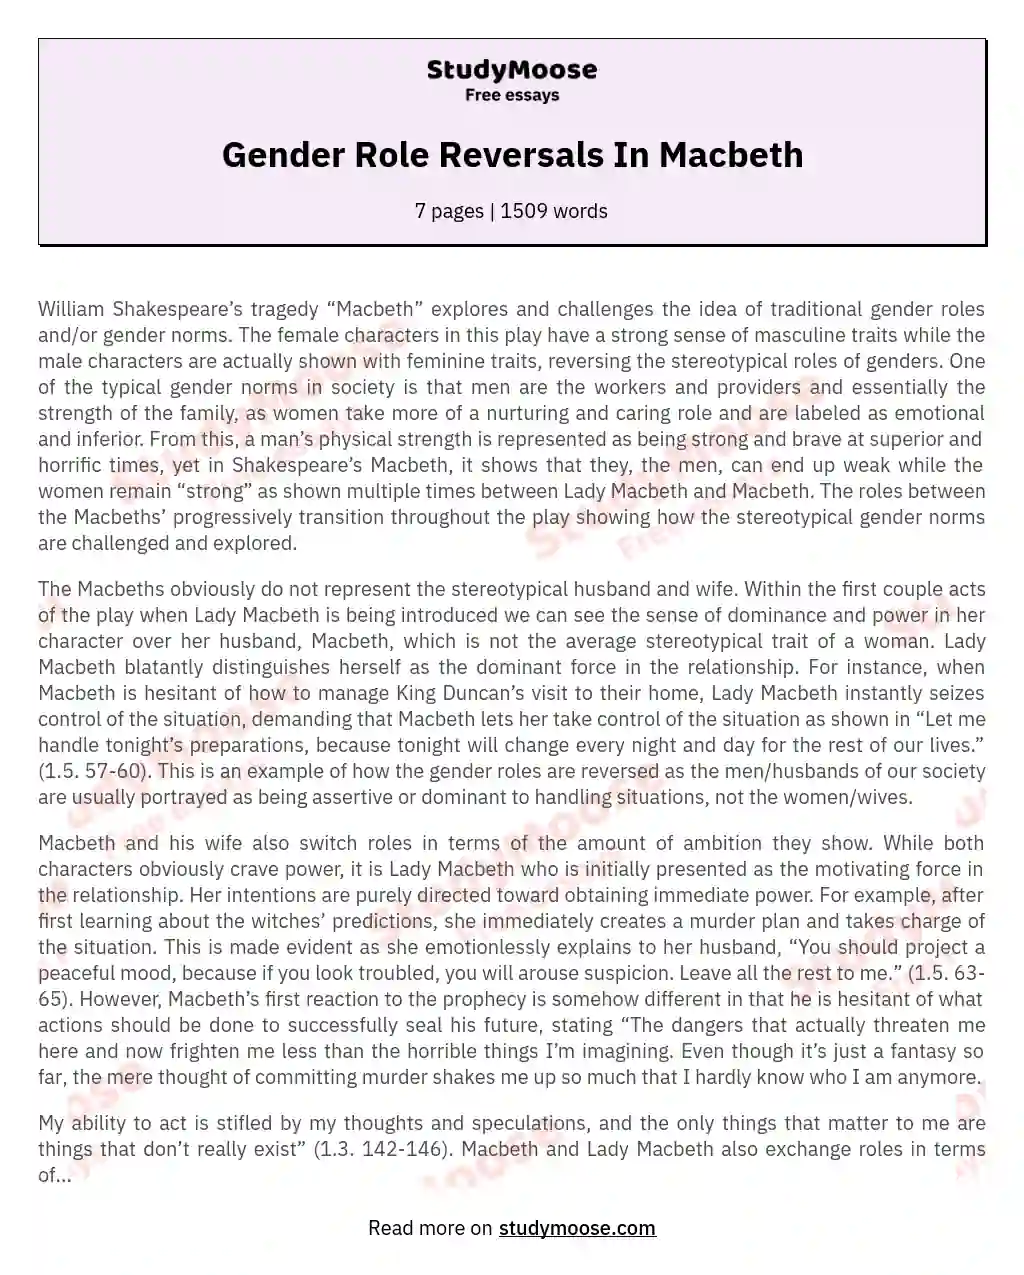 Gender Role Reversals In Macbeth essay